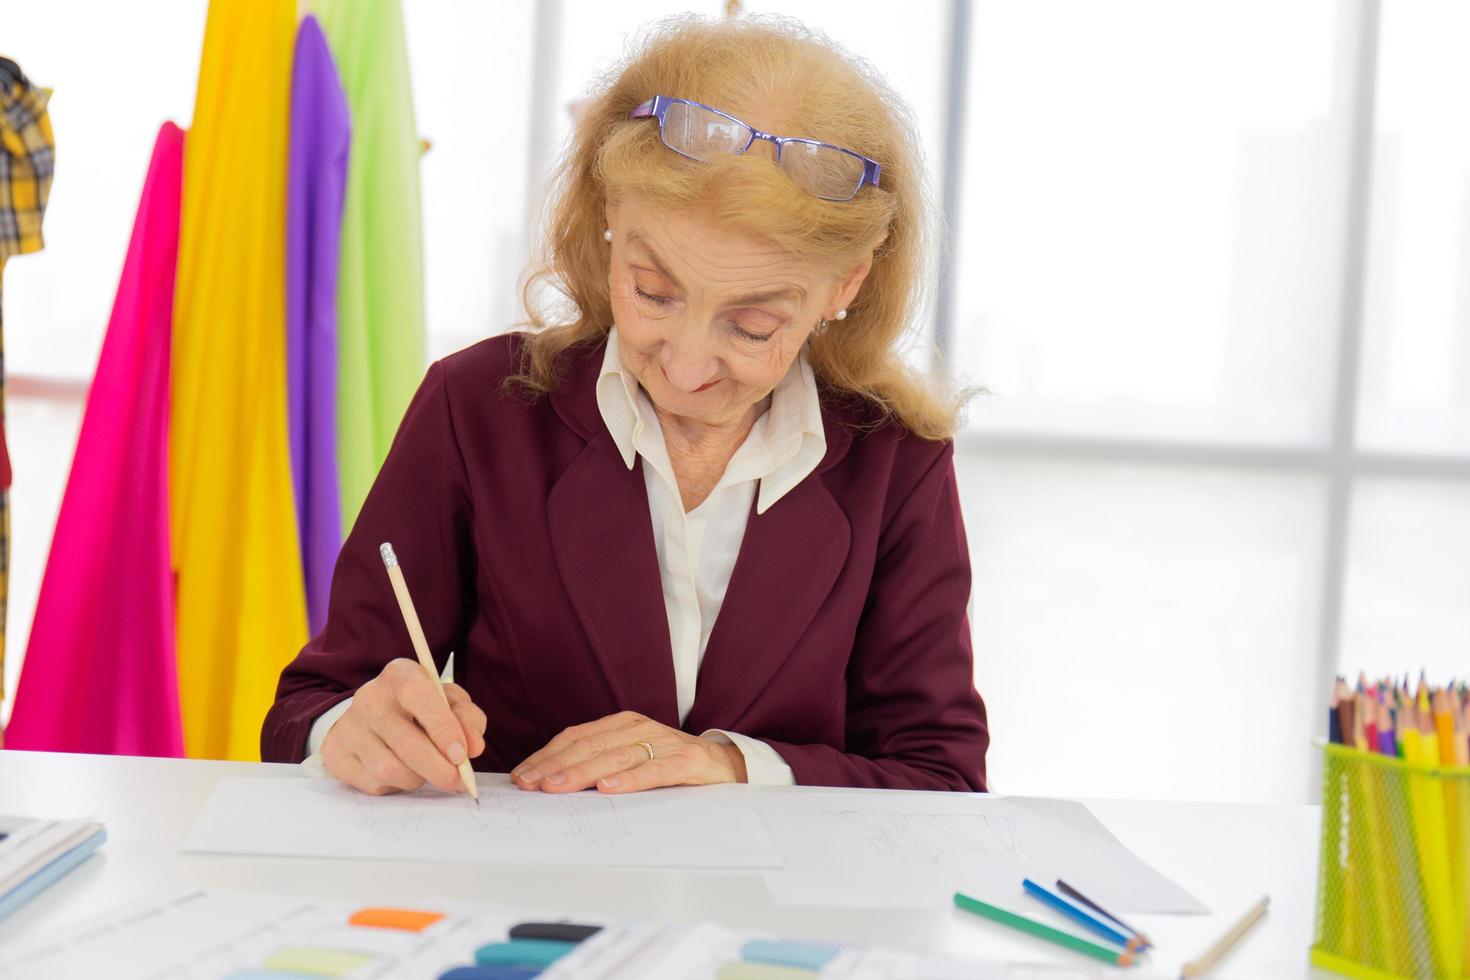 designer donne professioniste stanno disegnando schizzi su carta con le matite in una stanza da cucito. foto